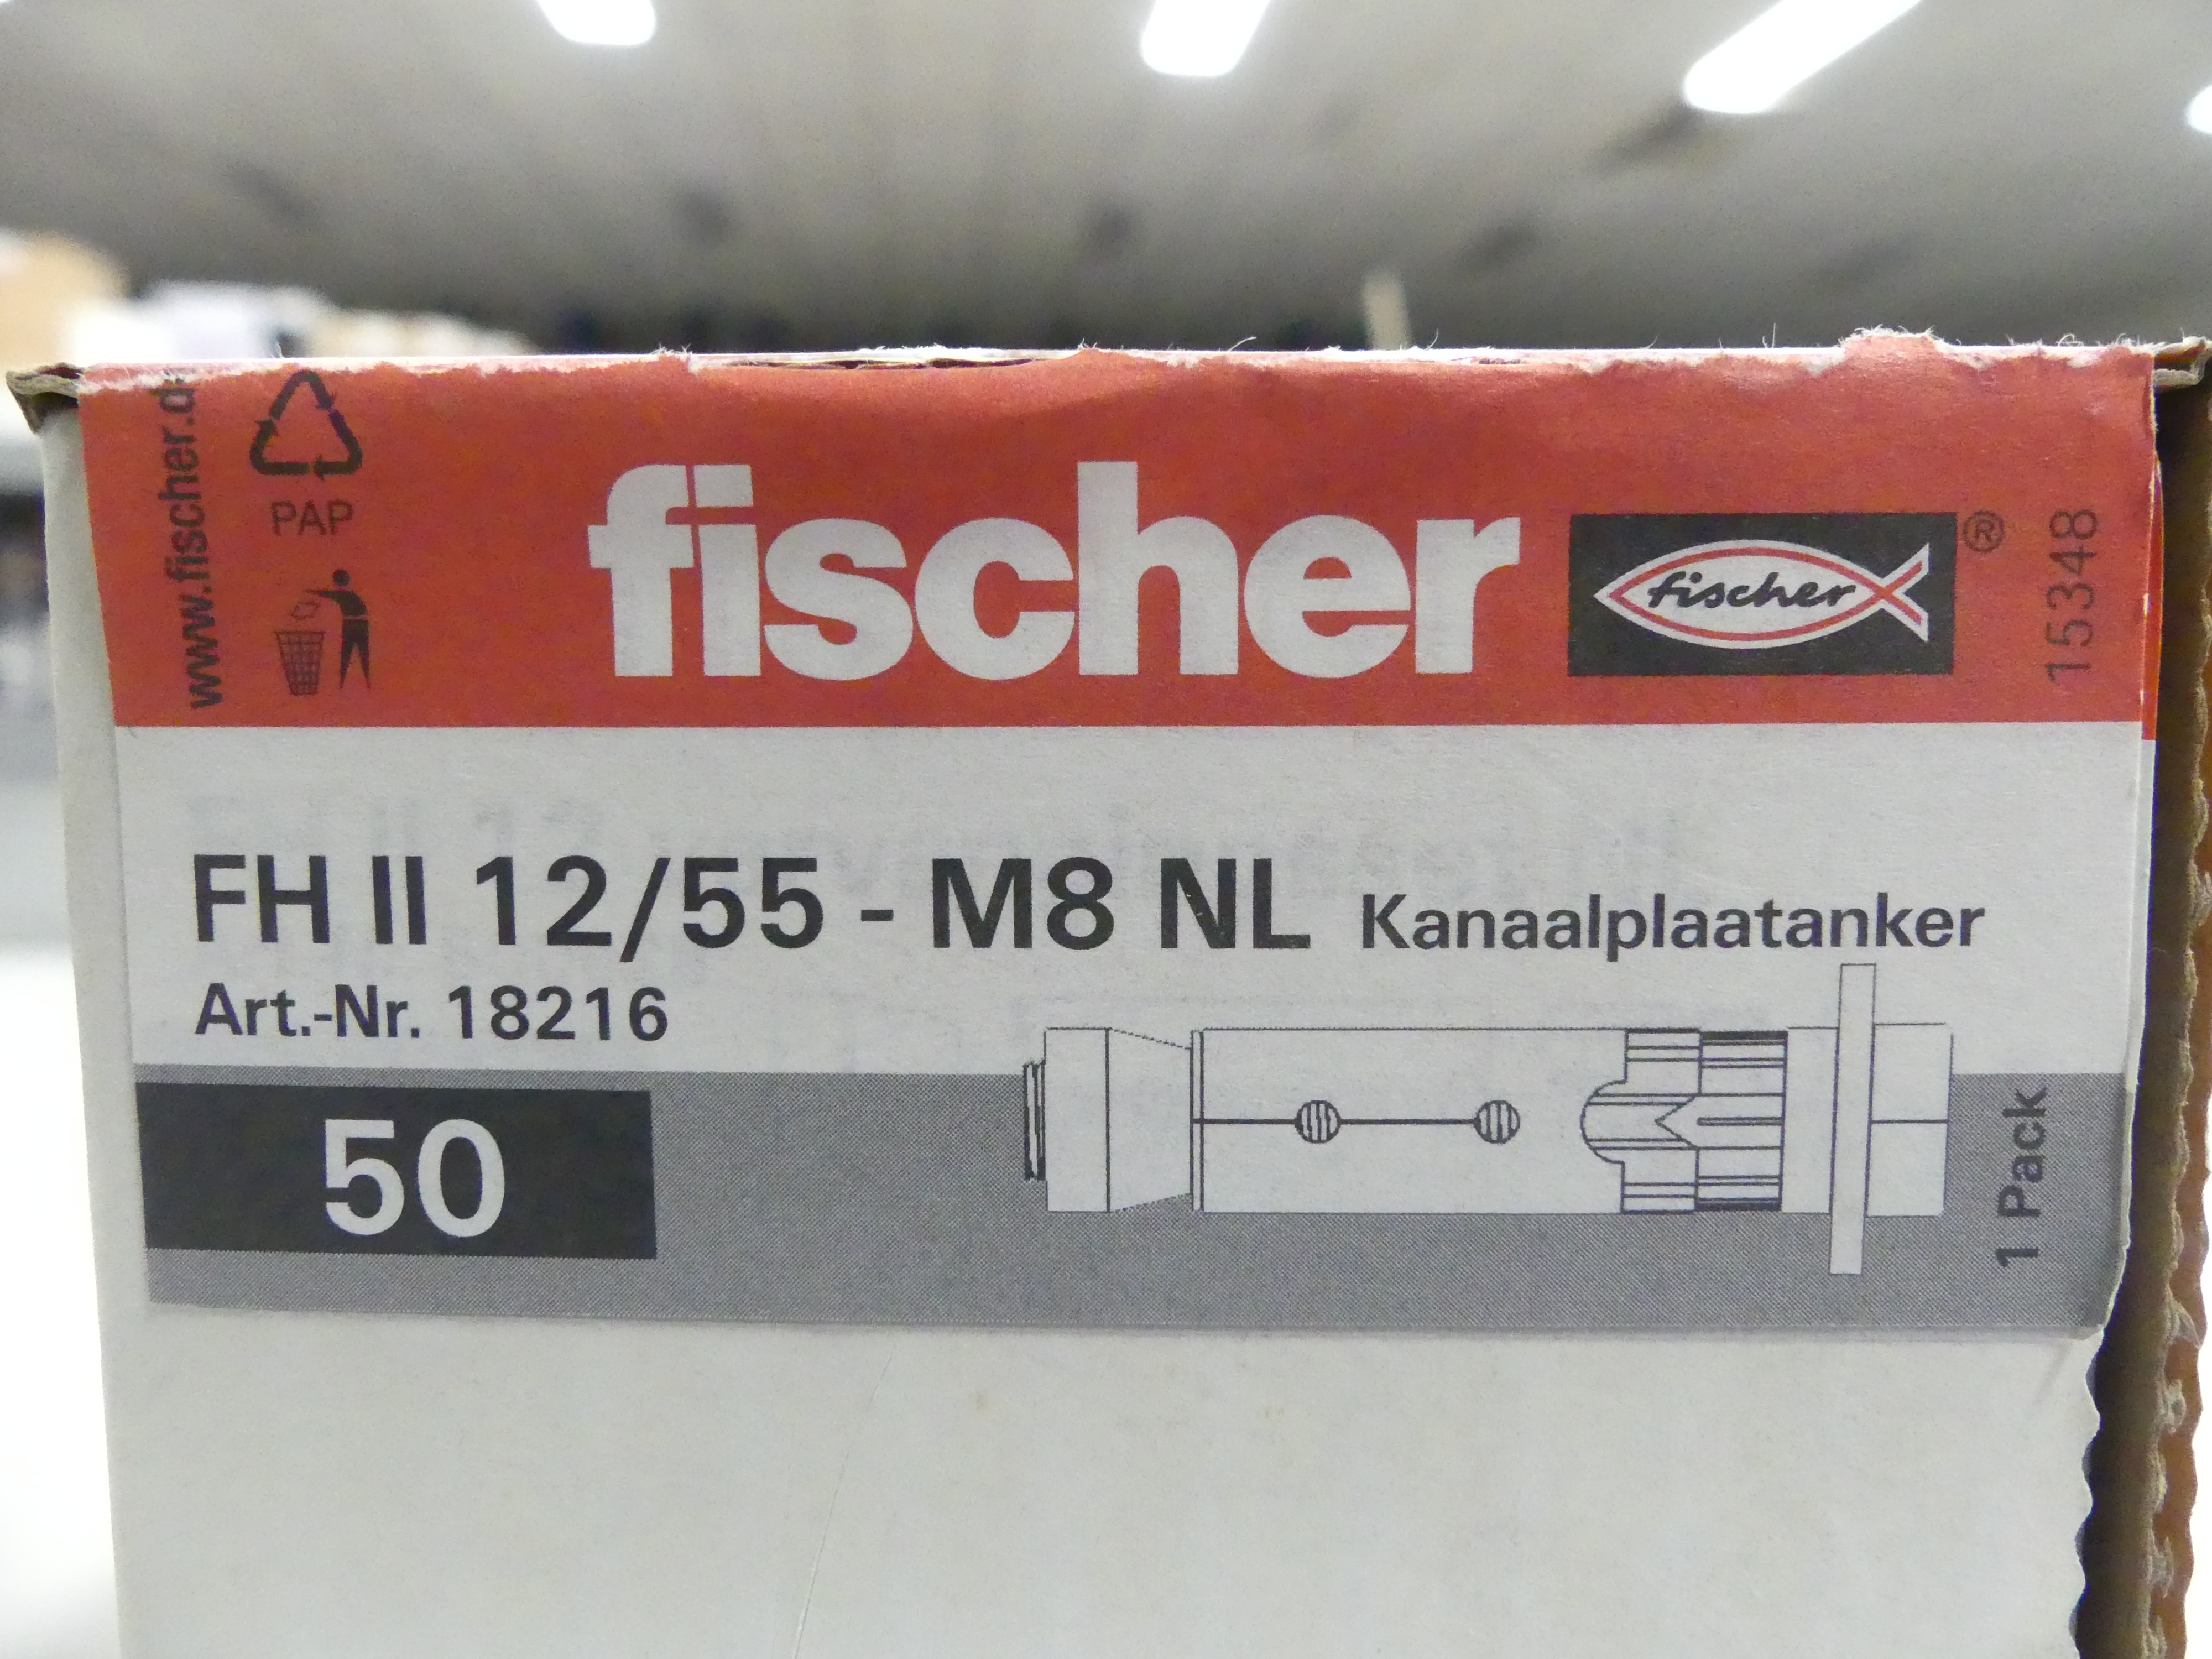 2x50 stuks Fischer kanaalplaatankers FH II 12/55 - M8 NL  